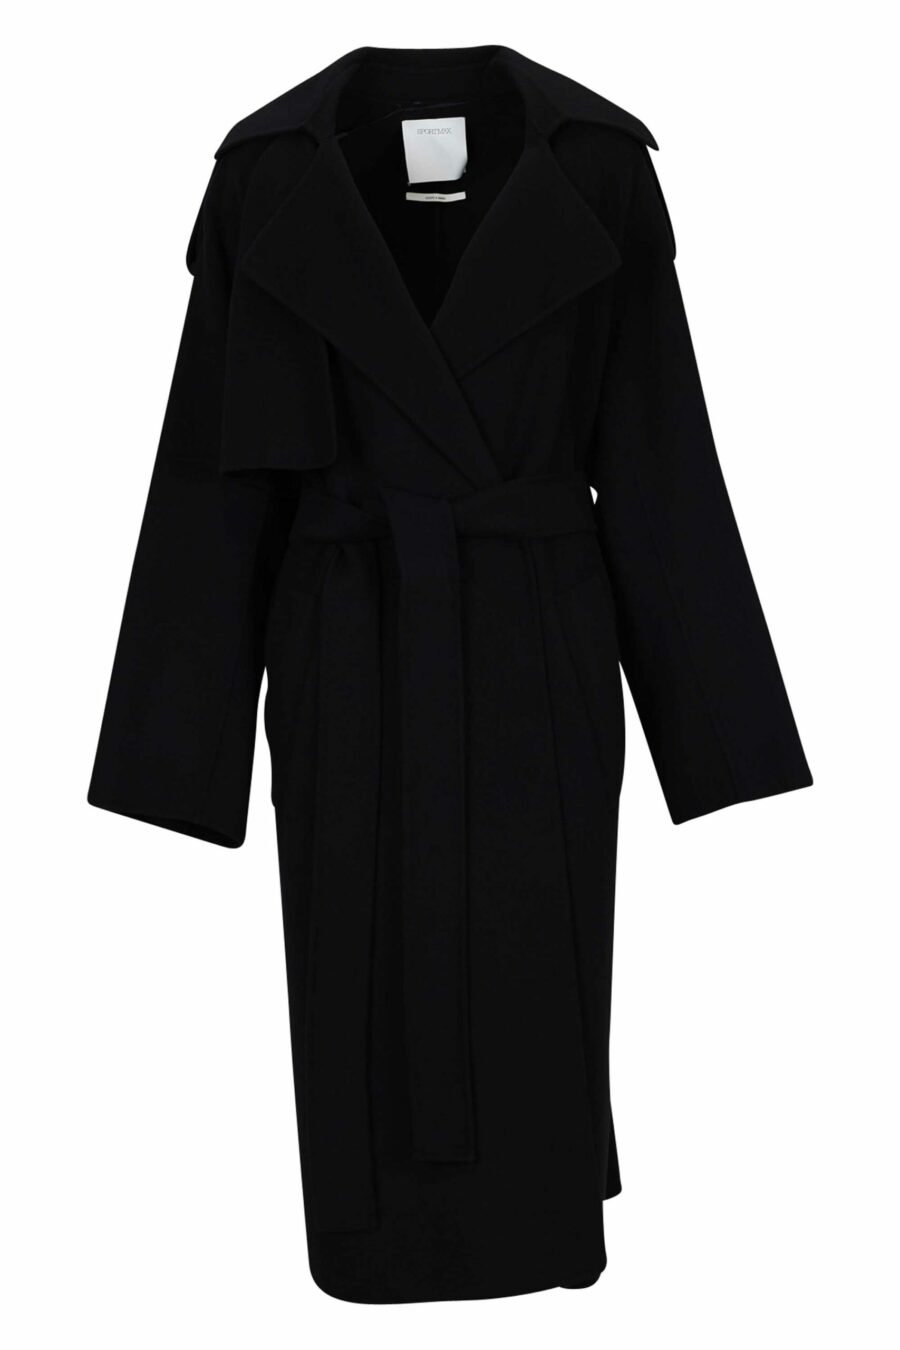 Abrigo negro largo de lana - 20110541060132 scaled